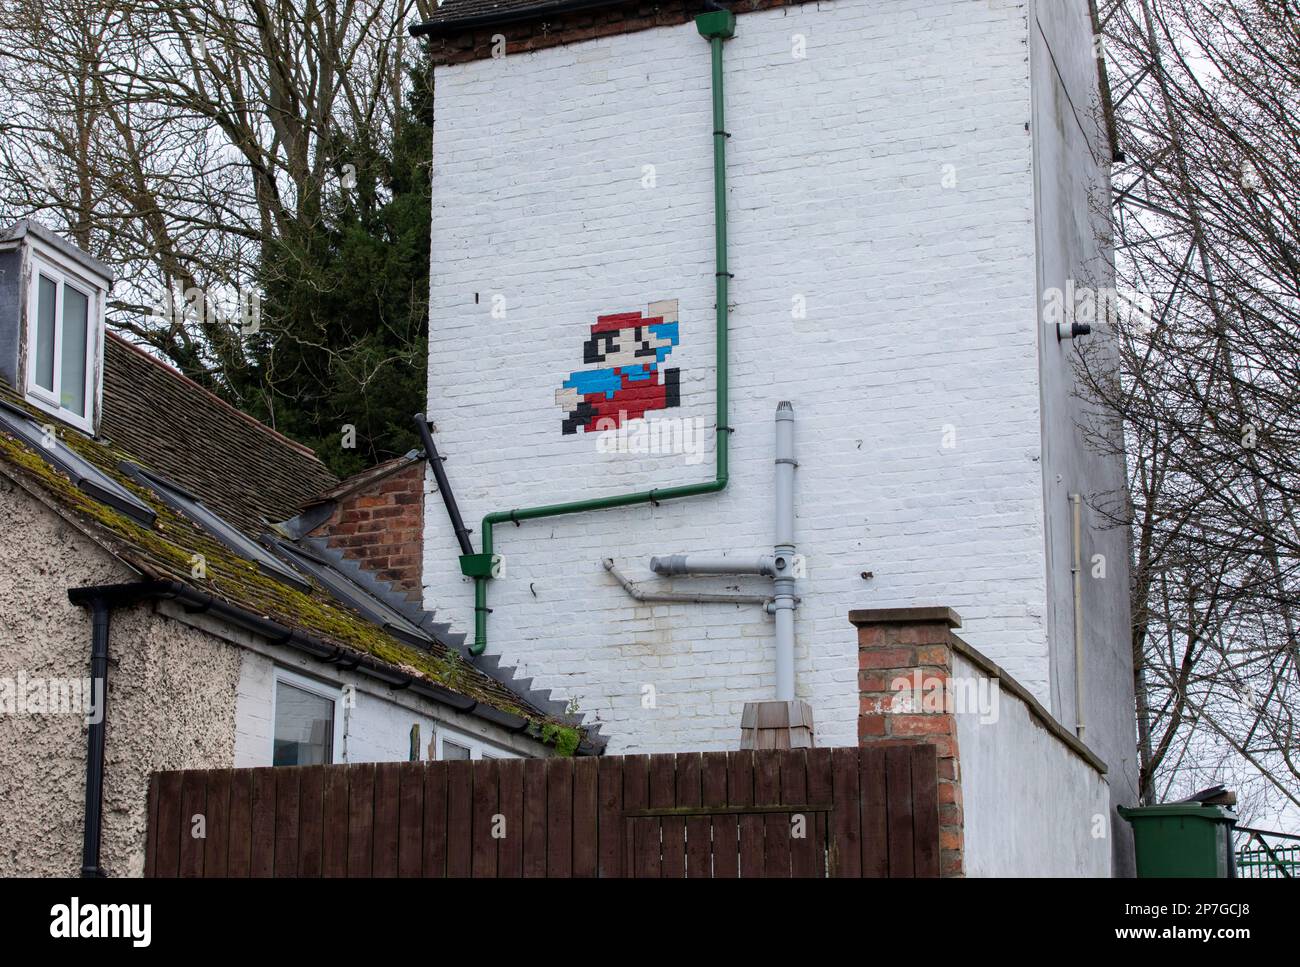 Un personaje de Super Mario Brothers pintado en el lado de una casa en Hylton Road, Worcester, Reino Unido Foto de stock